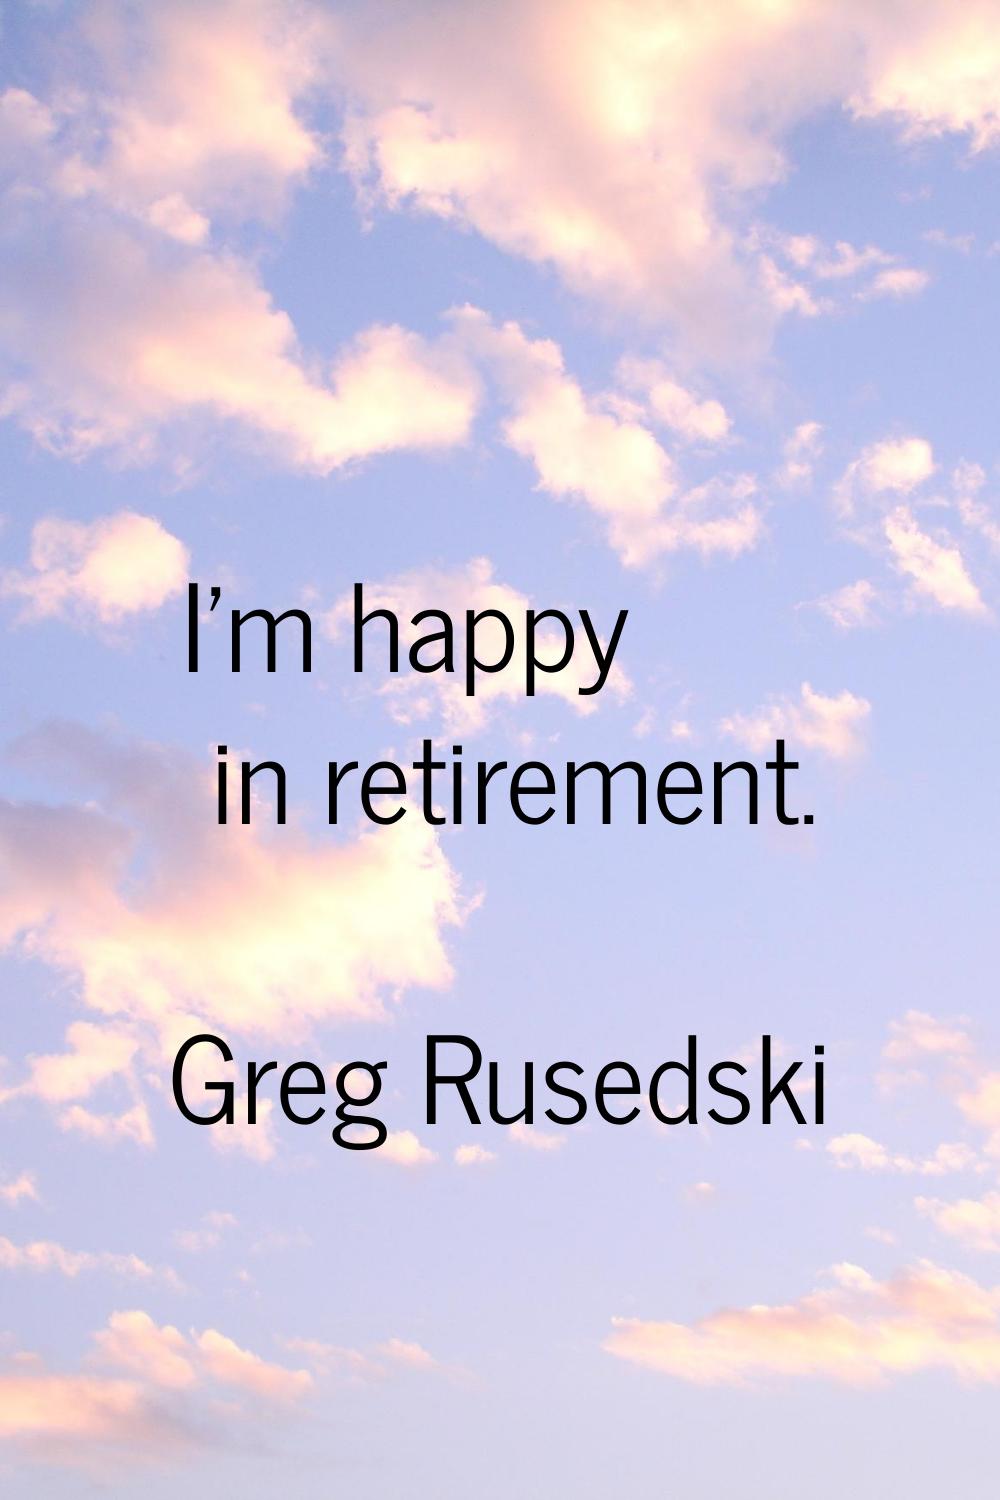 I'm happy in retirement.